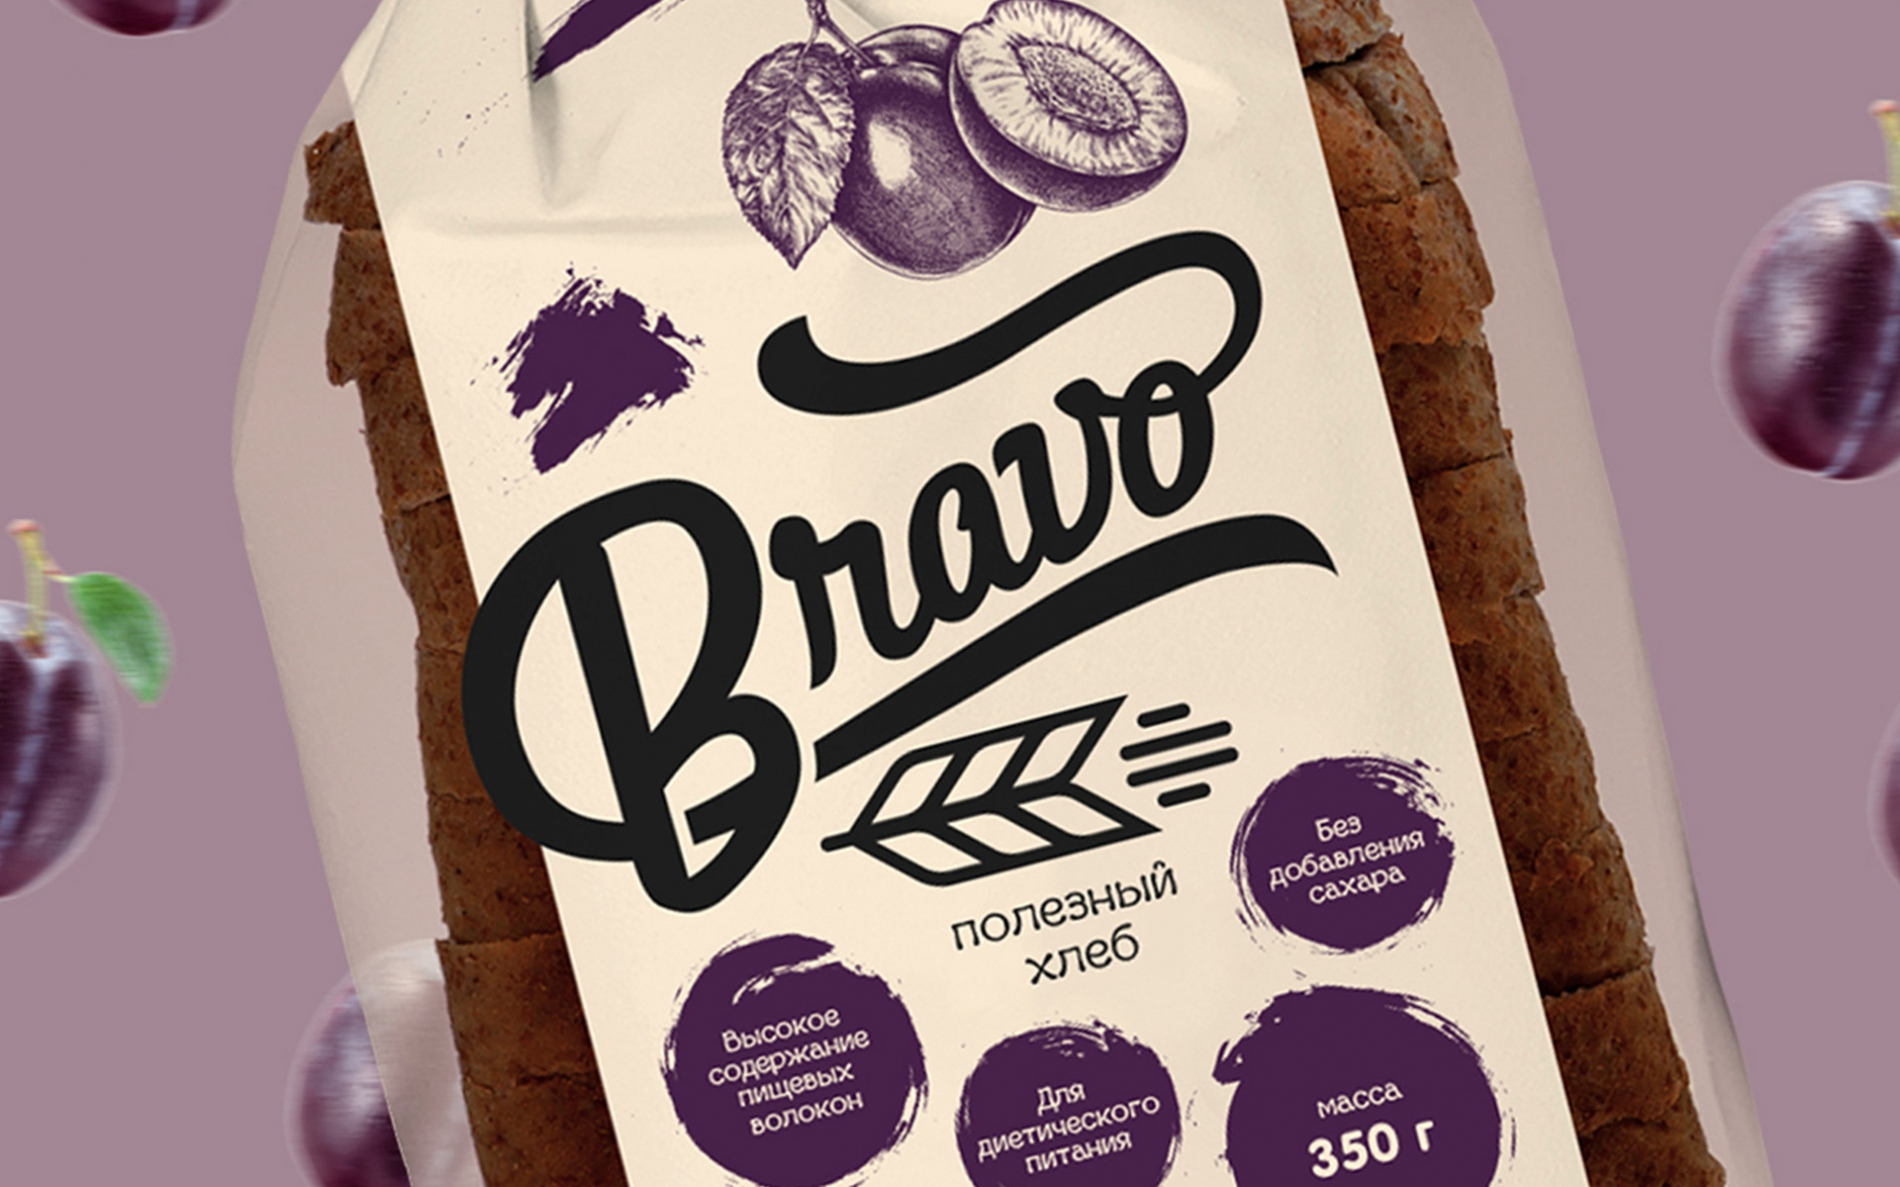 Дизайн упаковки диетического хлеба ТМ «Bravo»